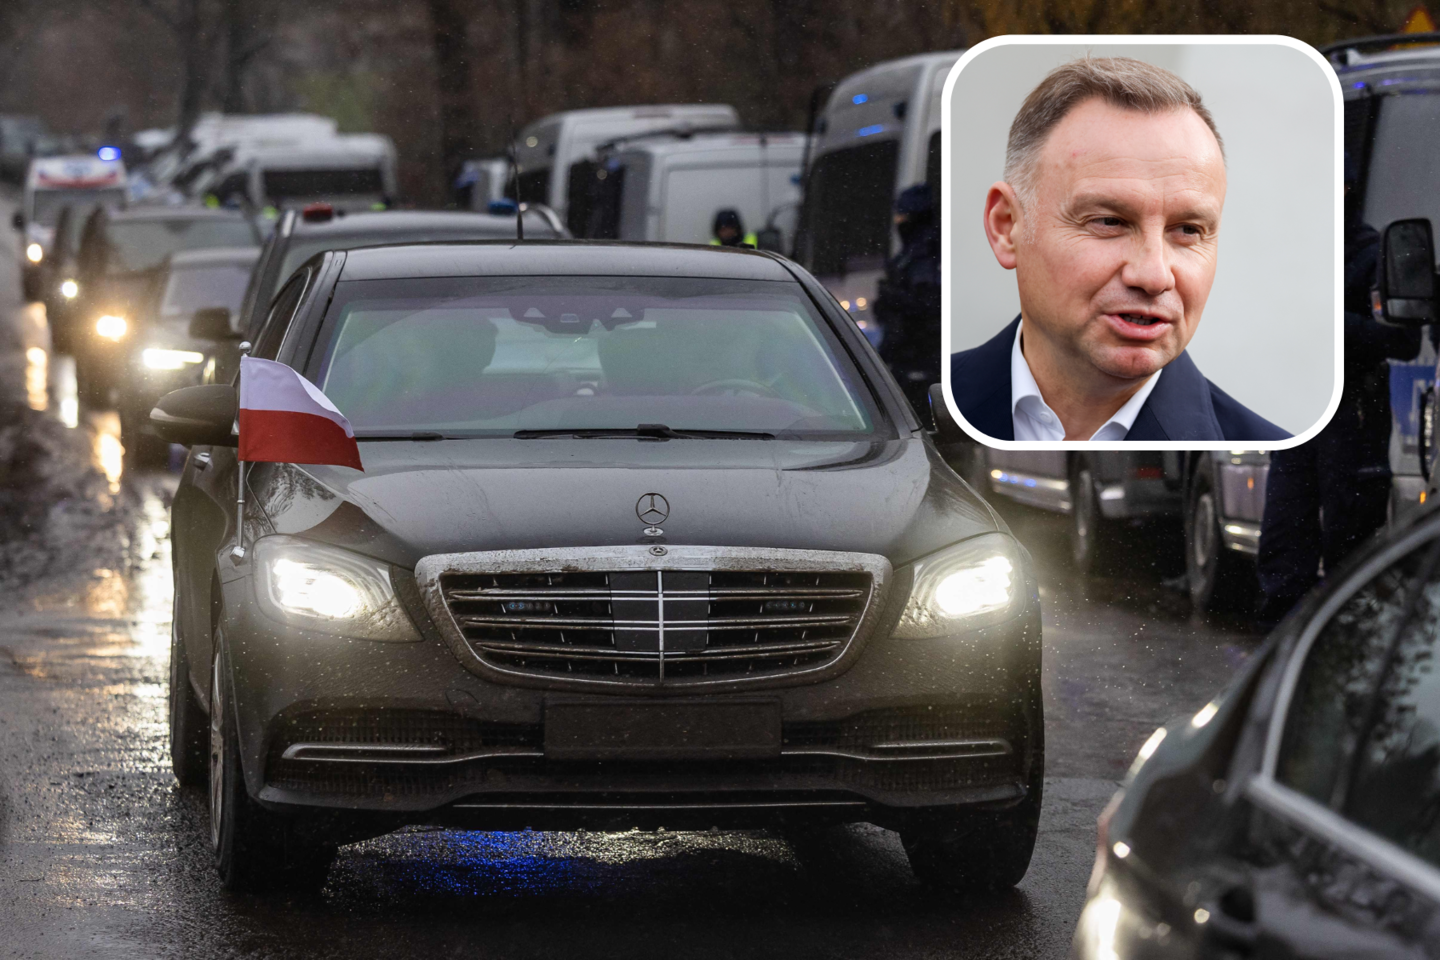 ​Lenkijos prezidento Andrzejaus Dudos automobilyje įmontuotą sekimo įrenginį galėjo įrengti Rusijos specialiosios tarnybos, spalio 27 d. pranešė Lenkijos leidinys „Rzeczpospolita“.<br>Lrytas.lt koliažas.